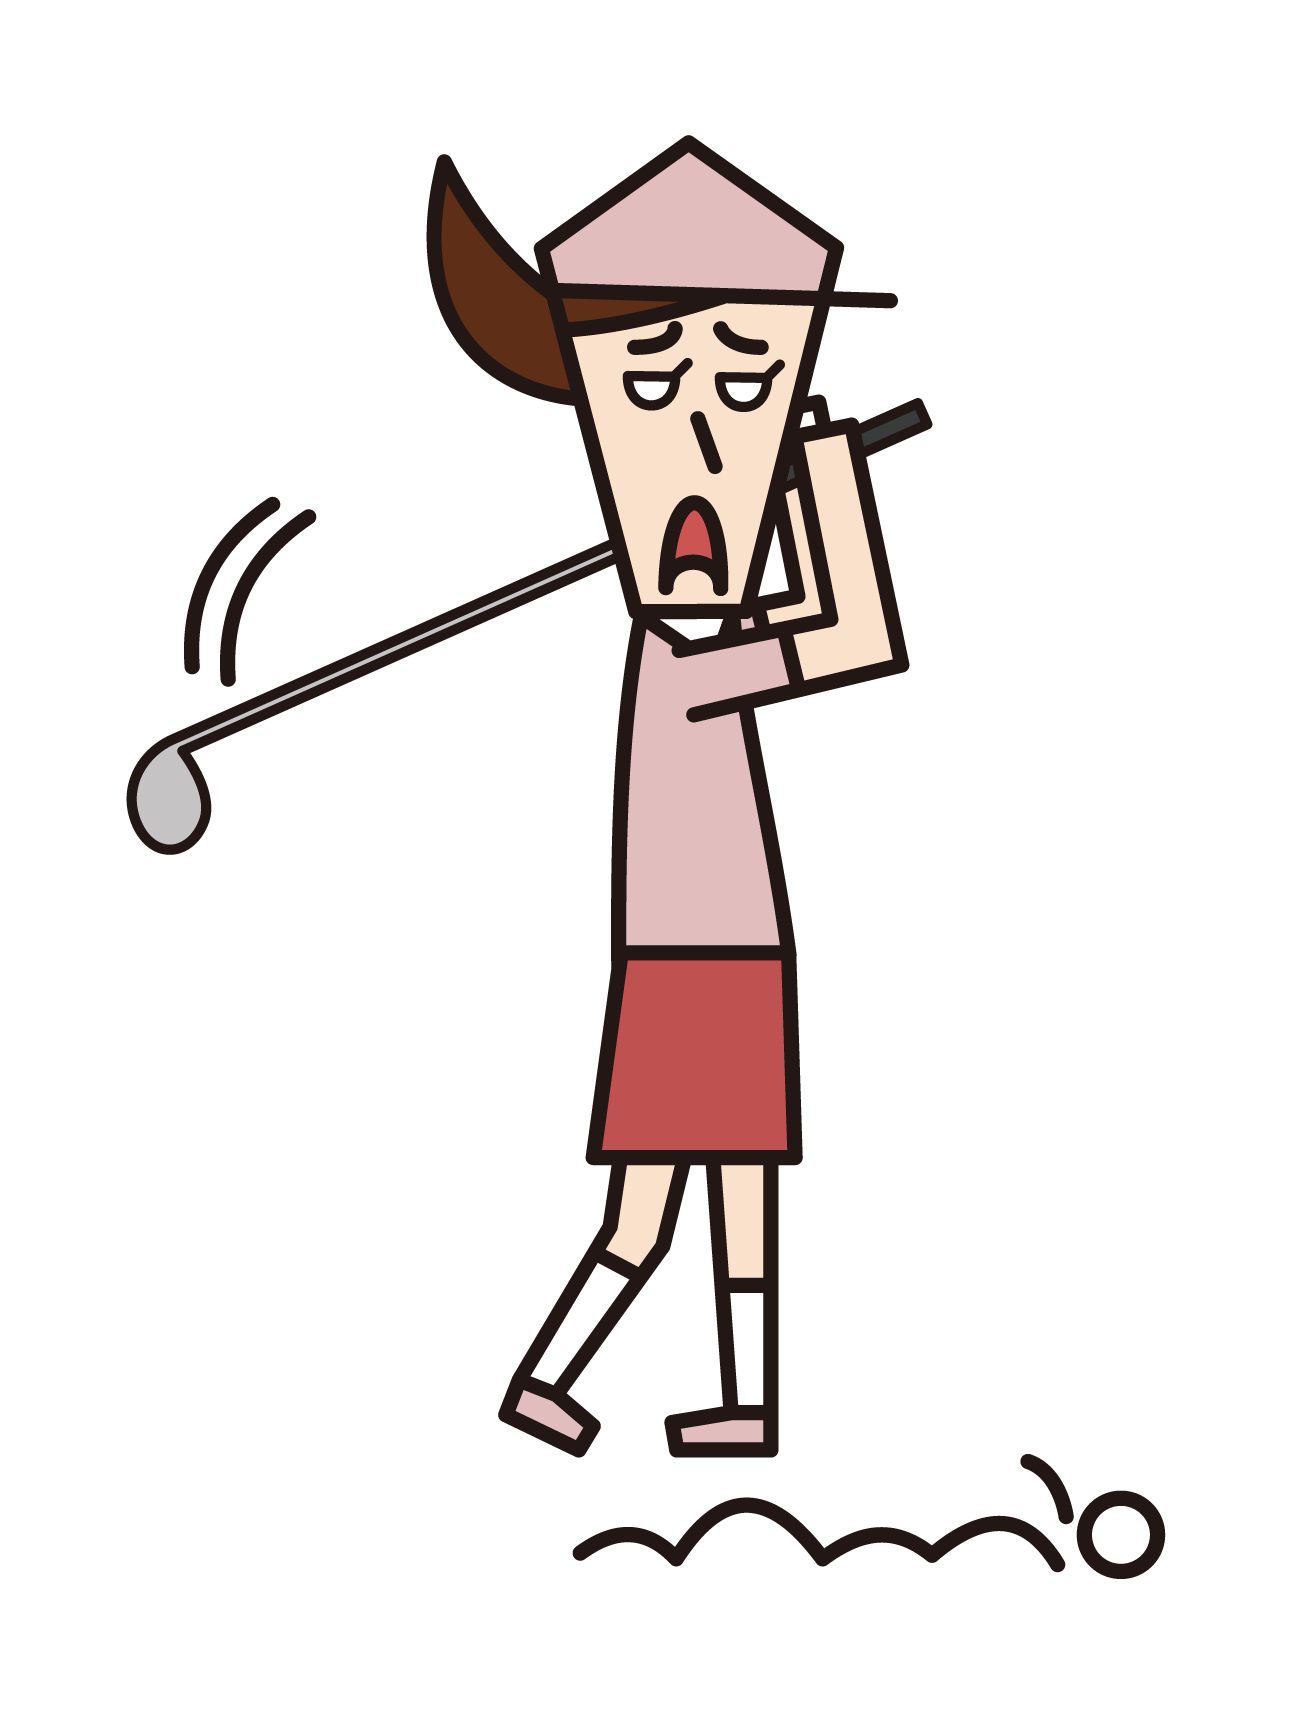 골프를 치는 척하는 남자의 삽화 (남성)